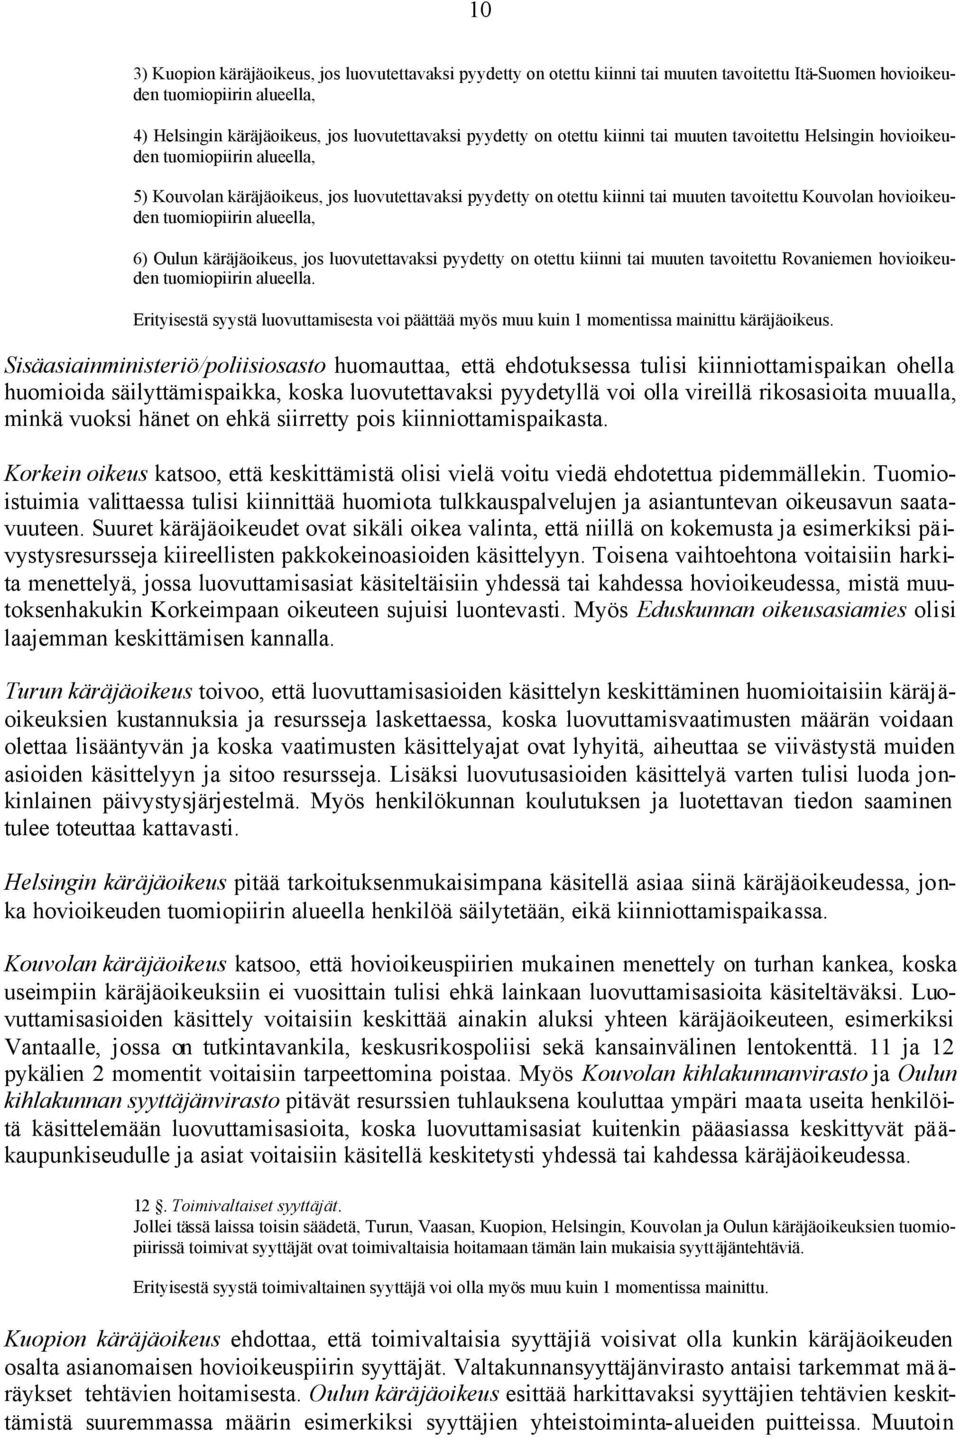 hovioikeuden tuomiopiirin alueella, 6) Oulun käräjäoikeus, jos luovutettavaksi pyydetty on otettu kiinni tai muuten tavoitettu Rovaniemen hovioikeuden tuomiopiirin alueella.